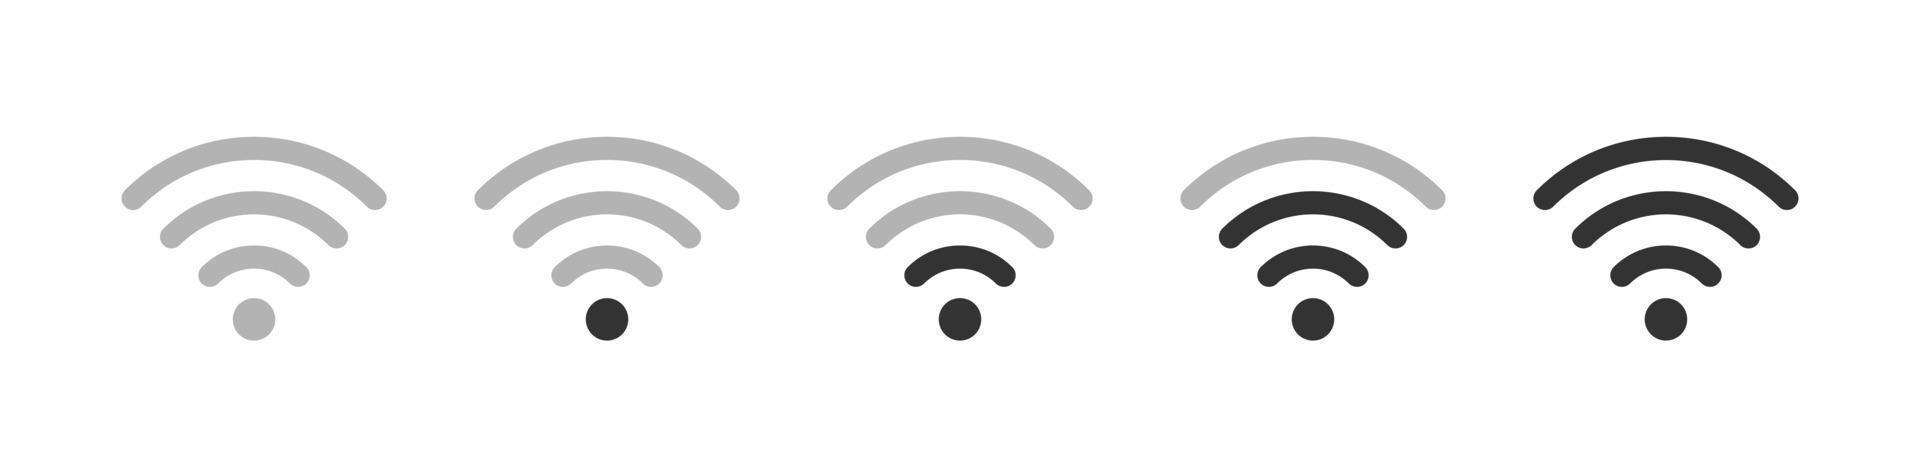 wifi ikoner set. indikator för mobil trådlös signalstyrka. Internetanslutning symbol ikoner. olika nivåer av wifi-signal. vektor illustration isolerad på vit bakgrund